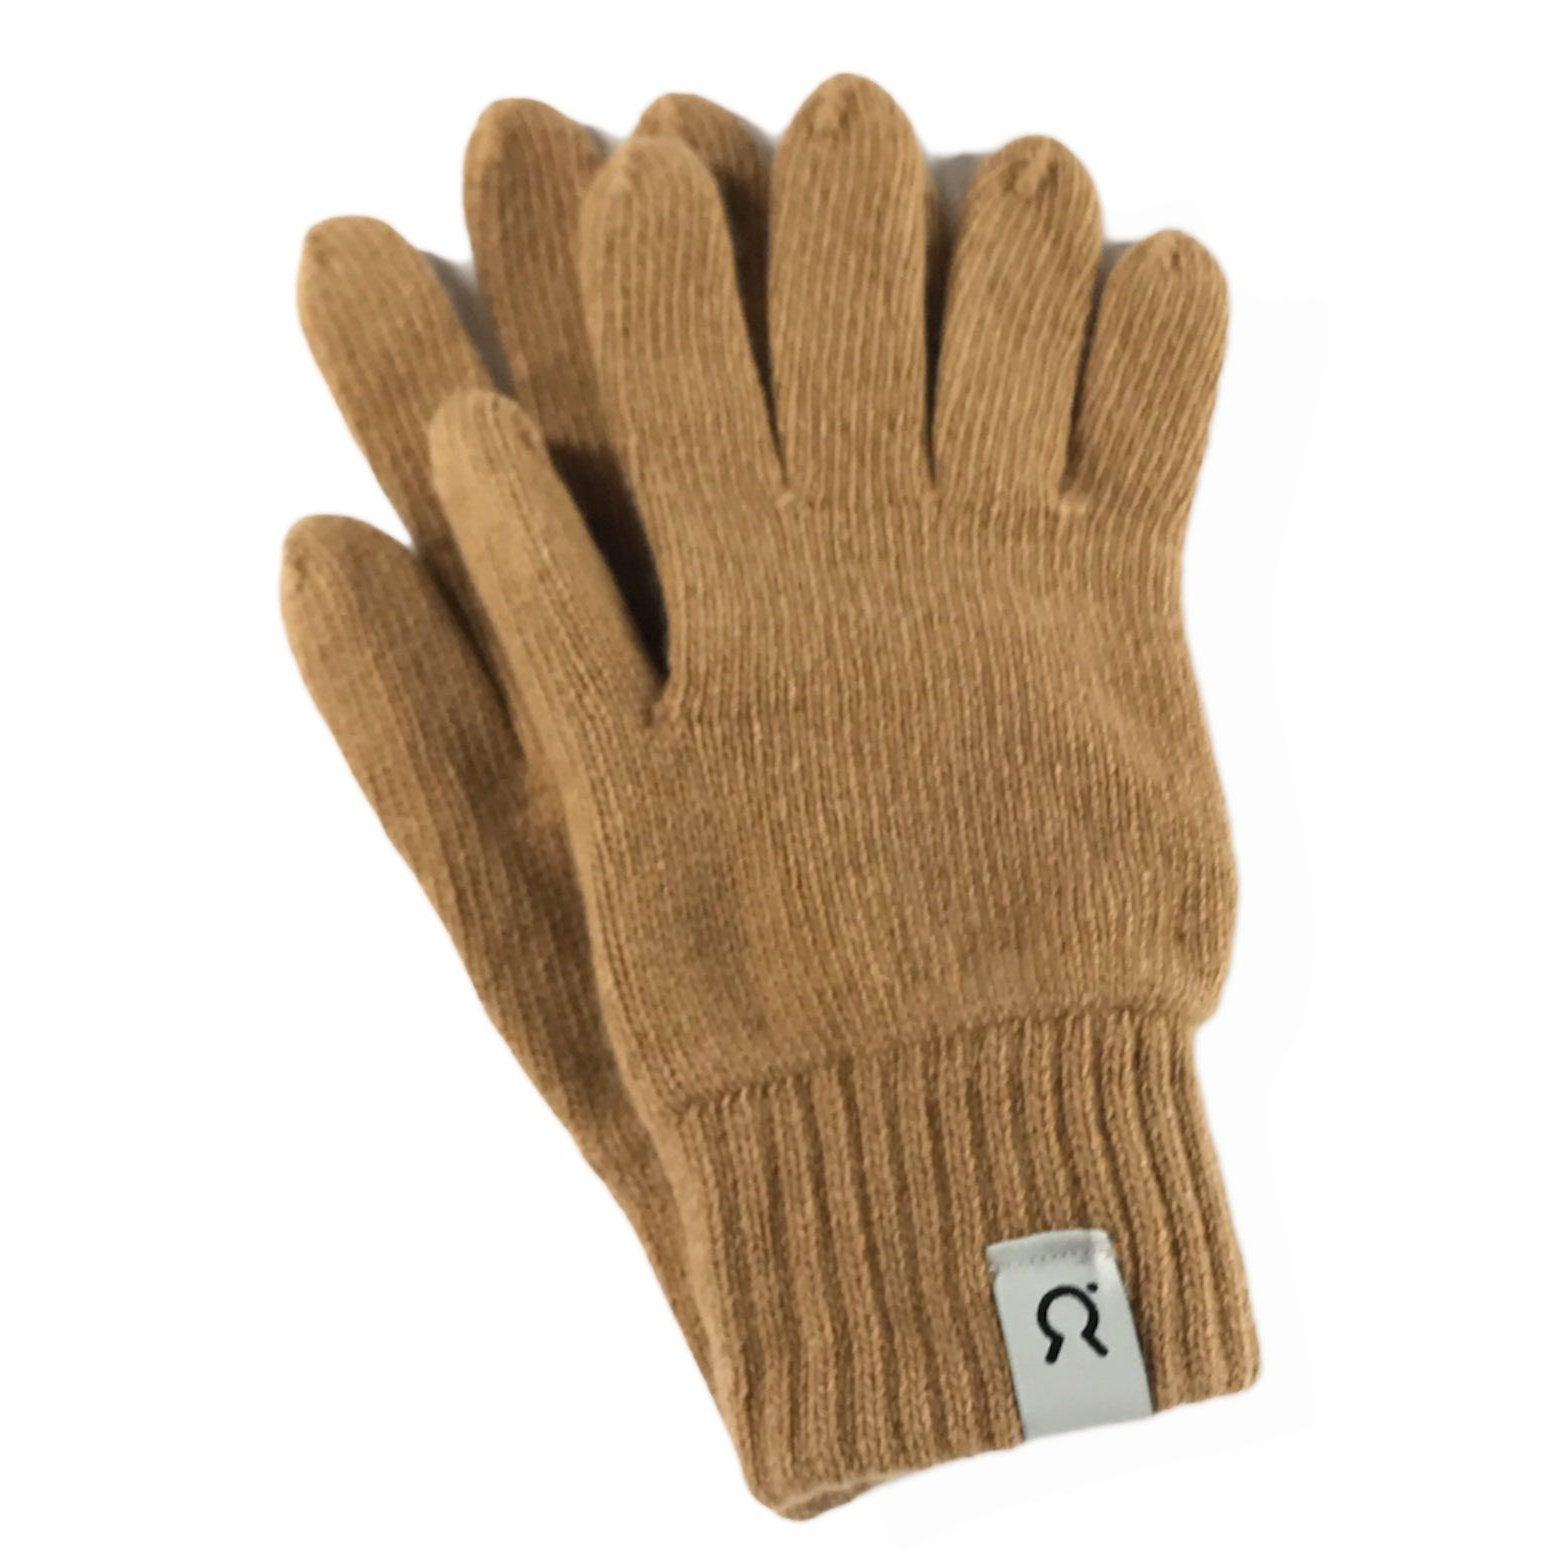 Handschuhe aus Recycelter Kaschmirwolle